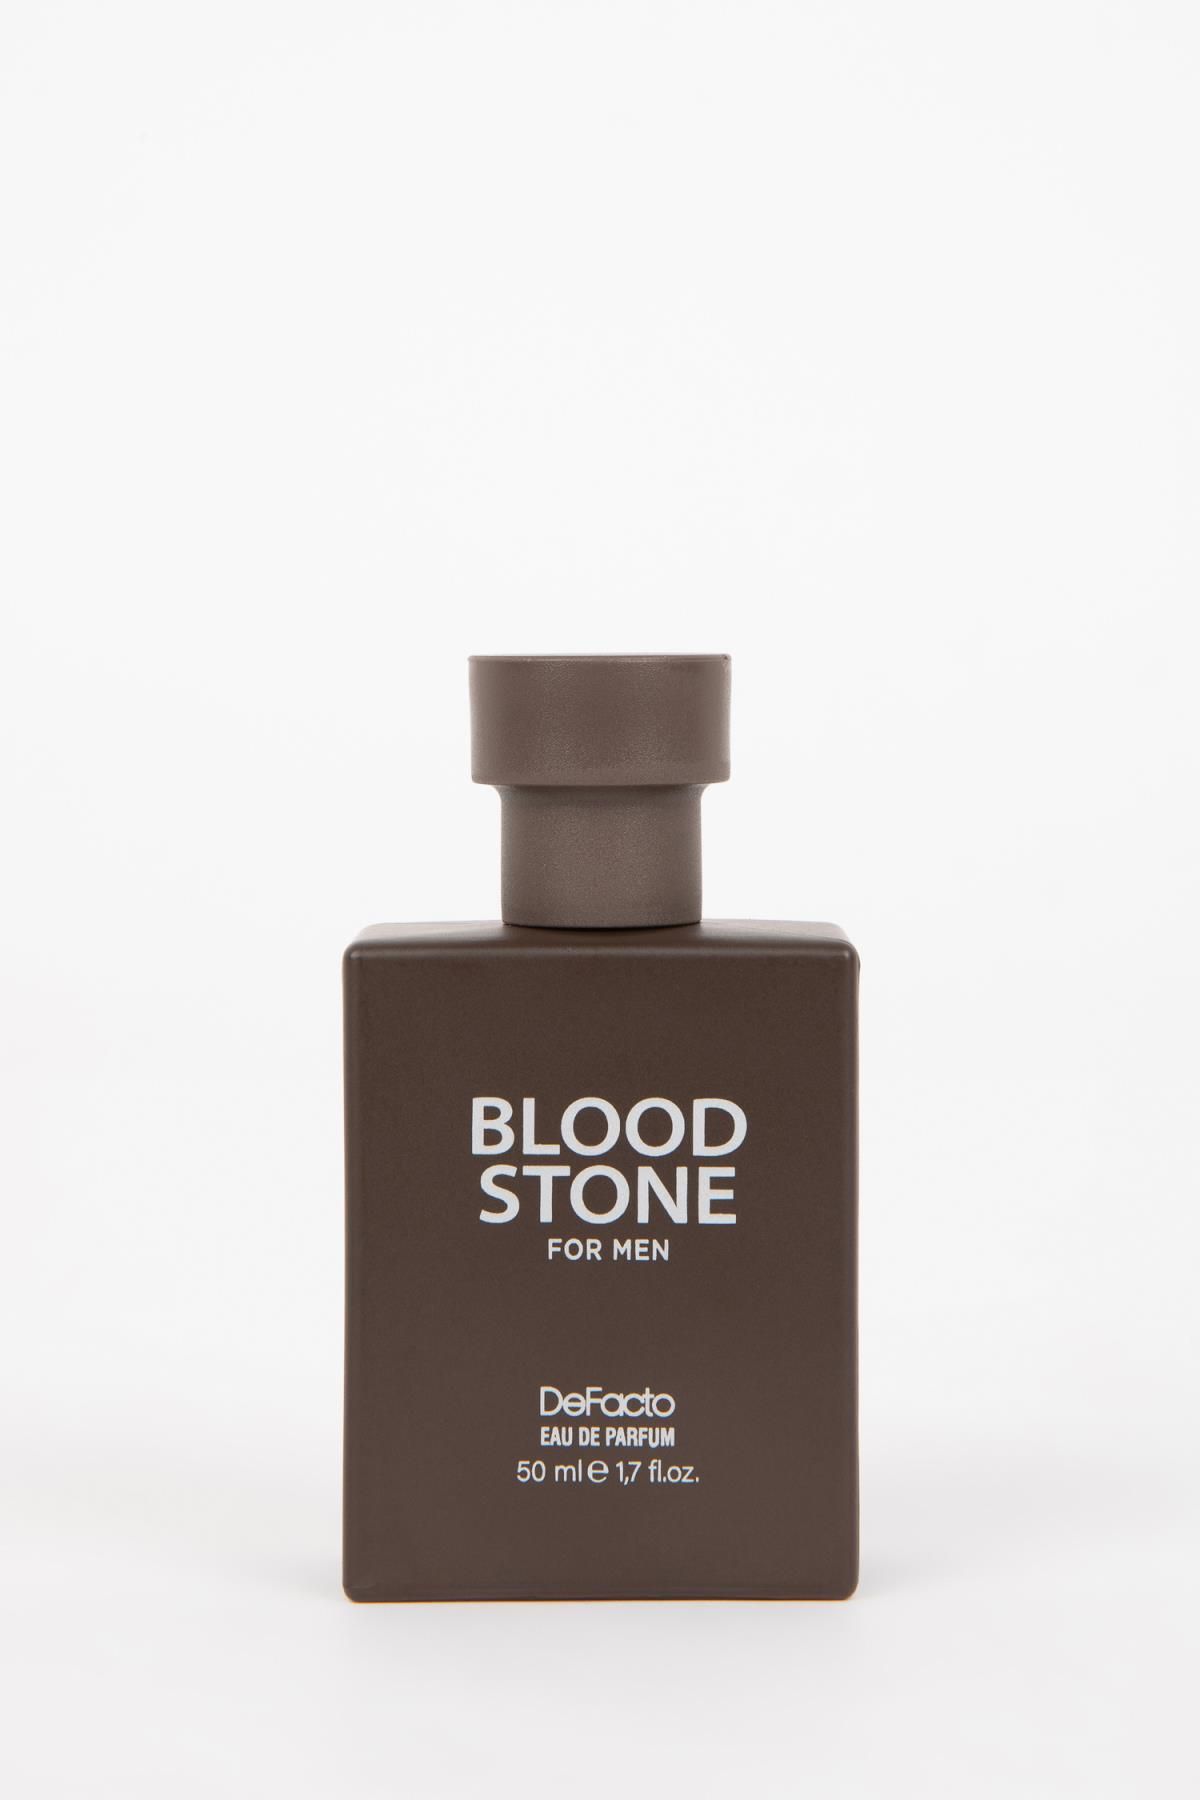 Defacto Erkek Bloond Stone Aromatik 50 ml Parfüm L4179azns